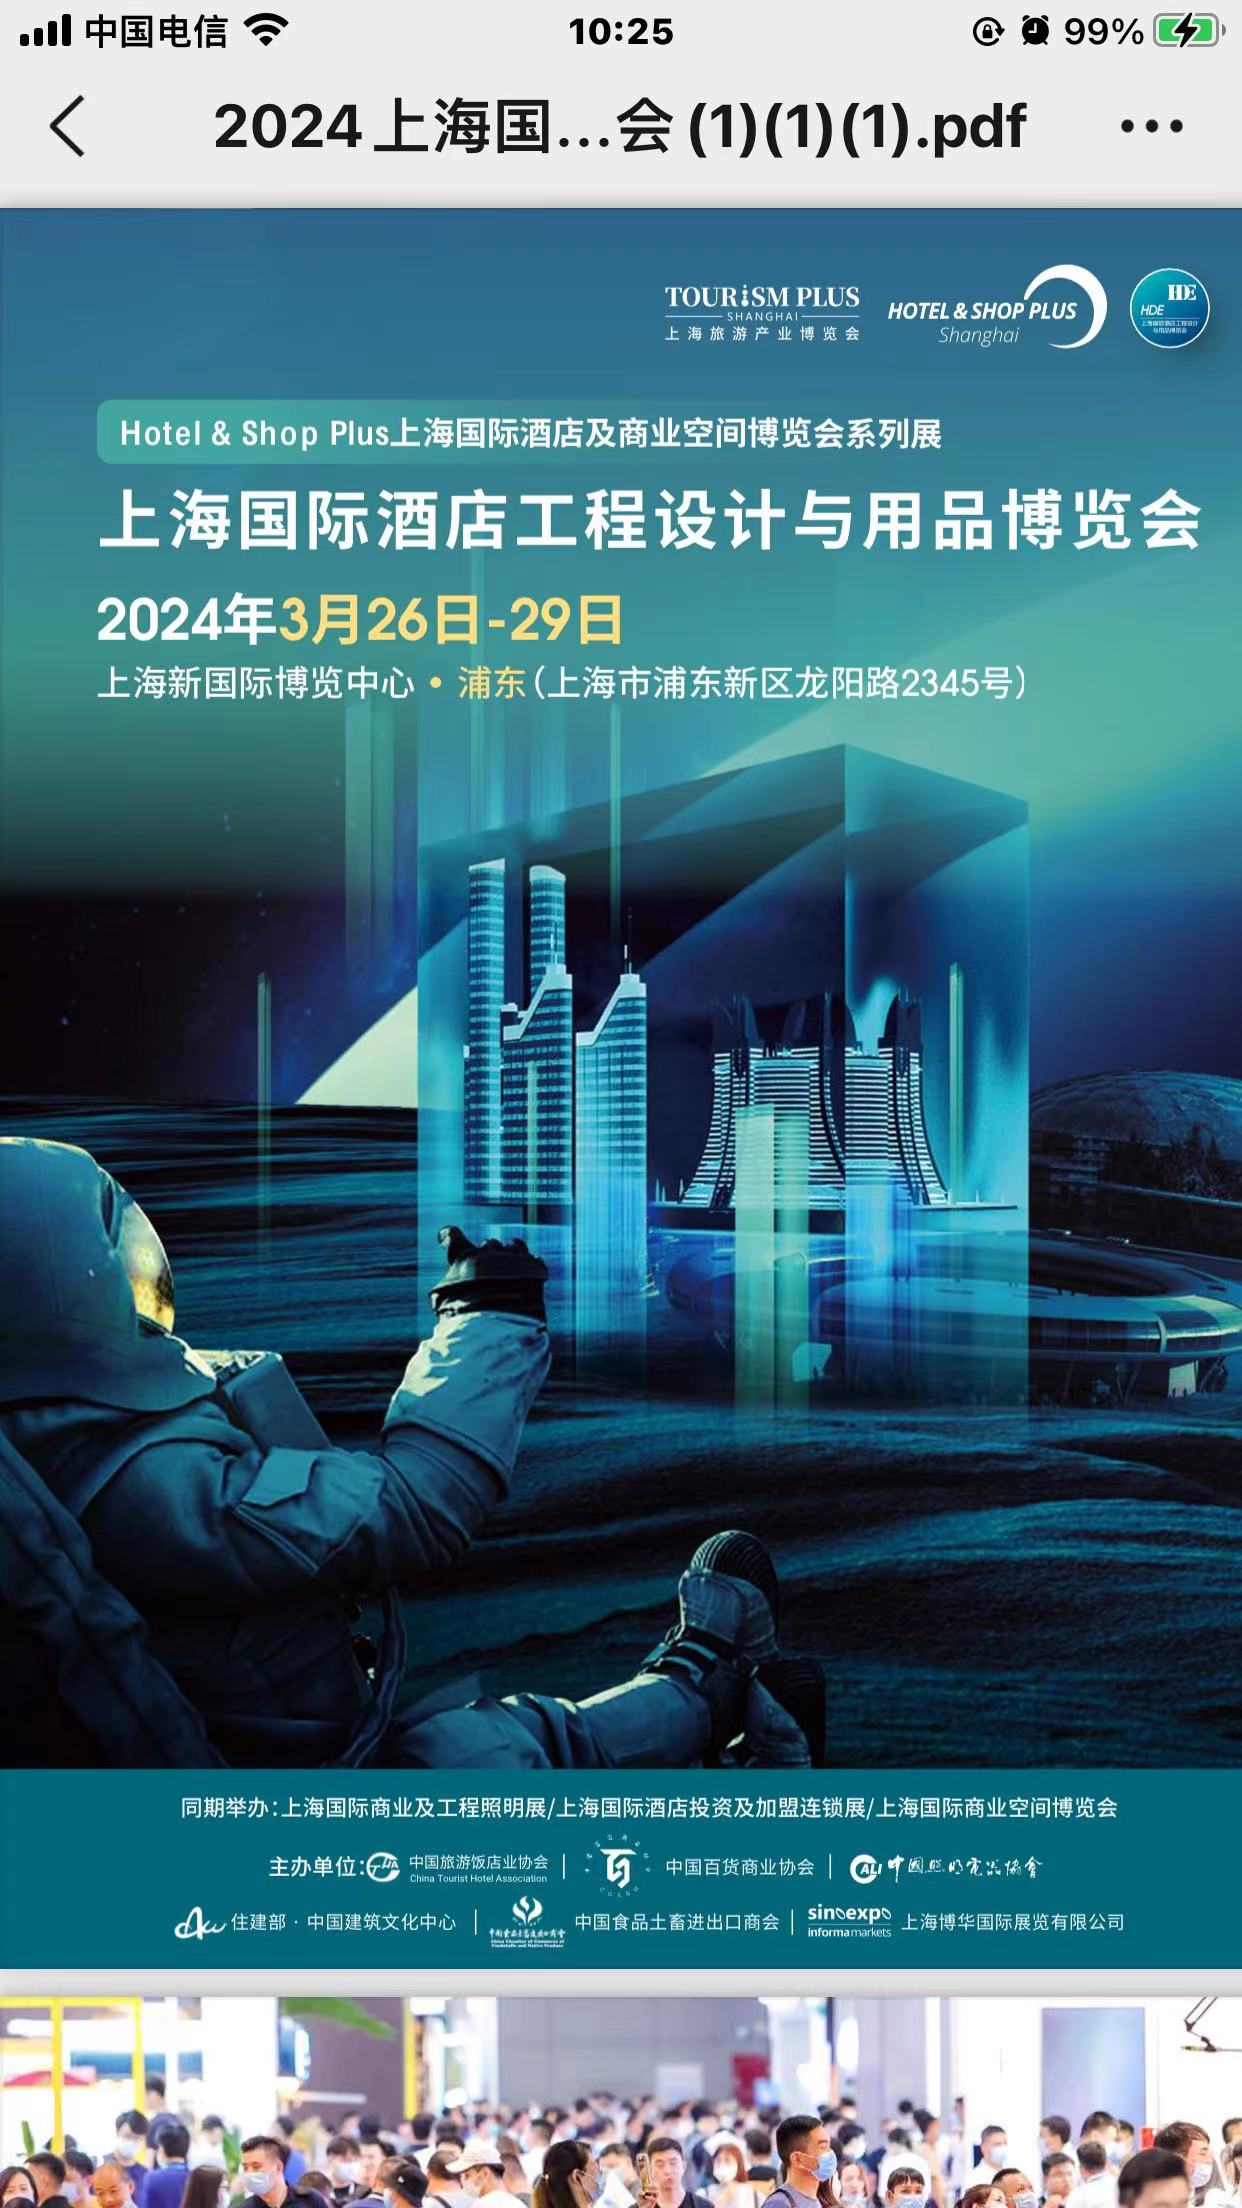 HDE-2024年上海酒店客房电器展览会-3月26日-29日举办